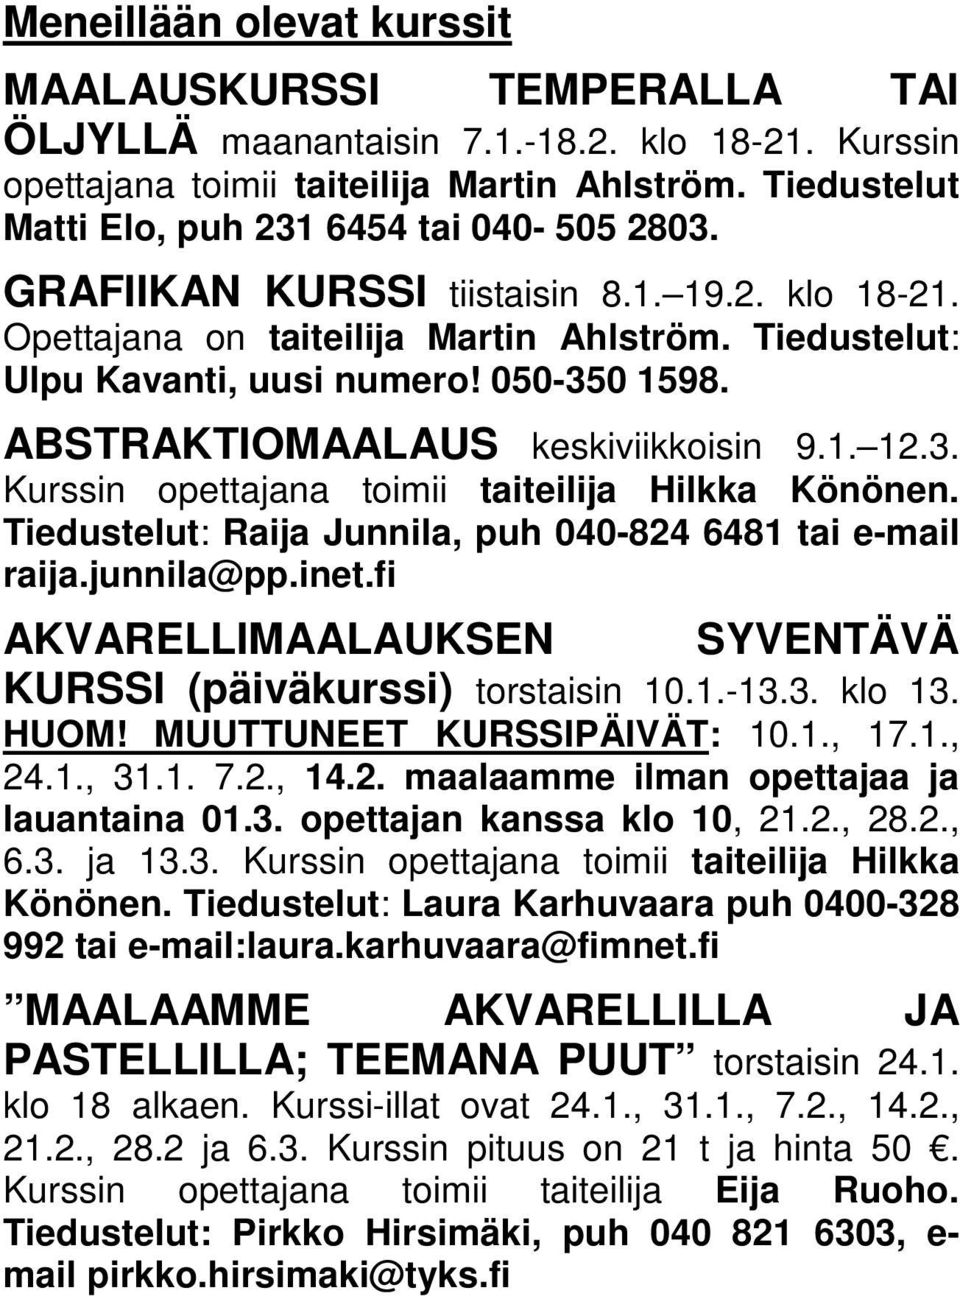 ABSTRAKTIOMAALAUS keskiviikkoisin 9.1. 12.3. Kurssin opettajana toimii taiteilija Hilkka Könönen. Tiedustelut: Raija Junnila, puh 040-824 6481 tai e-mail raija.junnila@pp.inet.